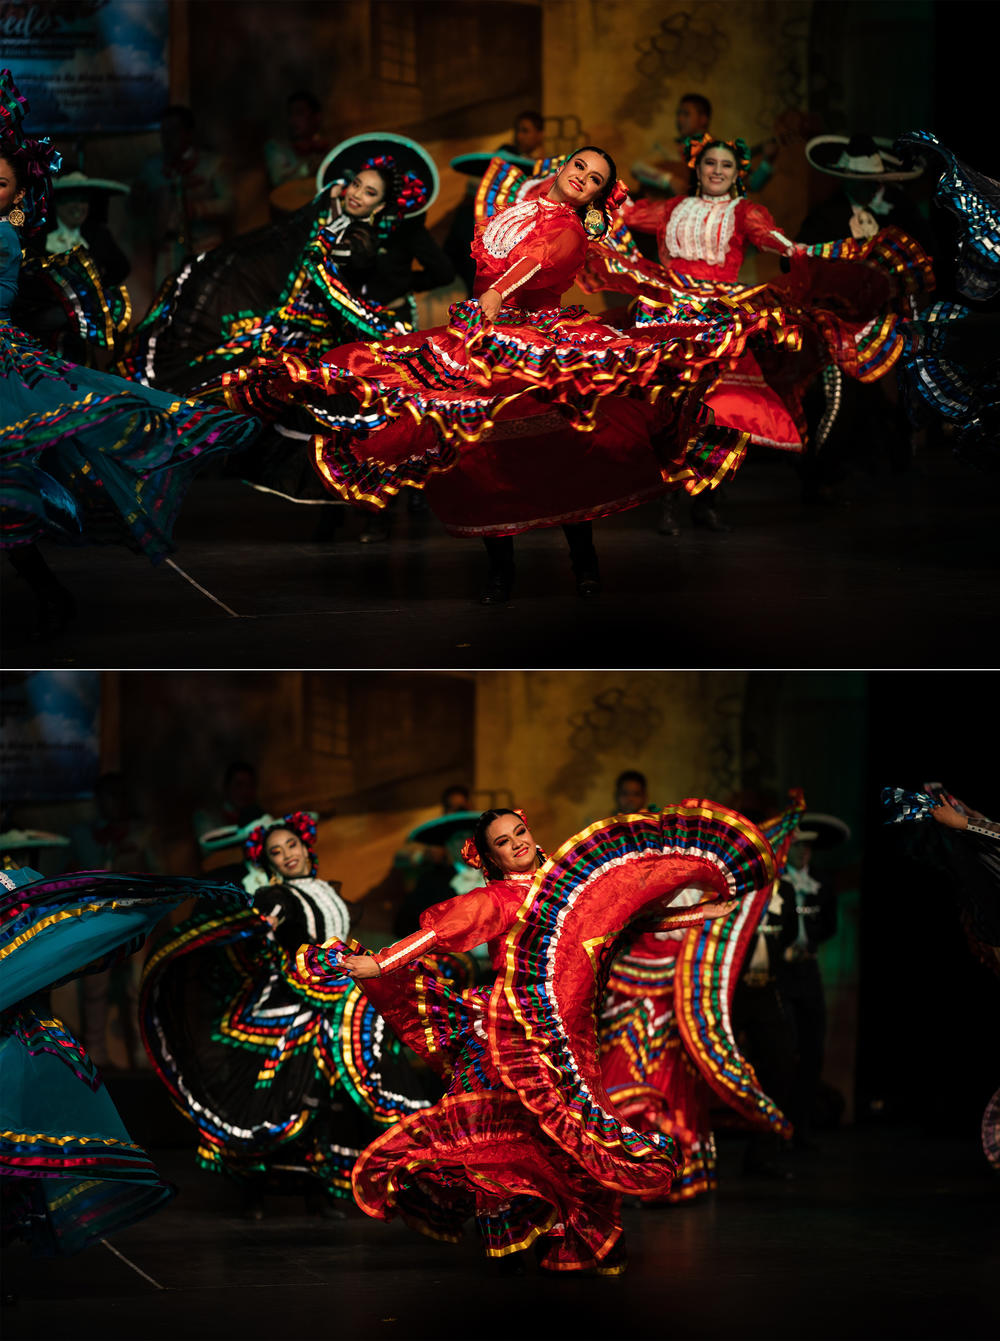 Miembros de la compañía de Danzas y Bailes tradicionales Alma Mexicana interpretan un baile regional de Jalisco, México, en el Teatro Ferrocarrilero Gudelio Morales de Ciudad de México en julio.